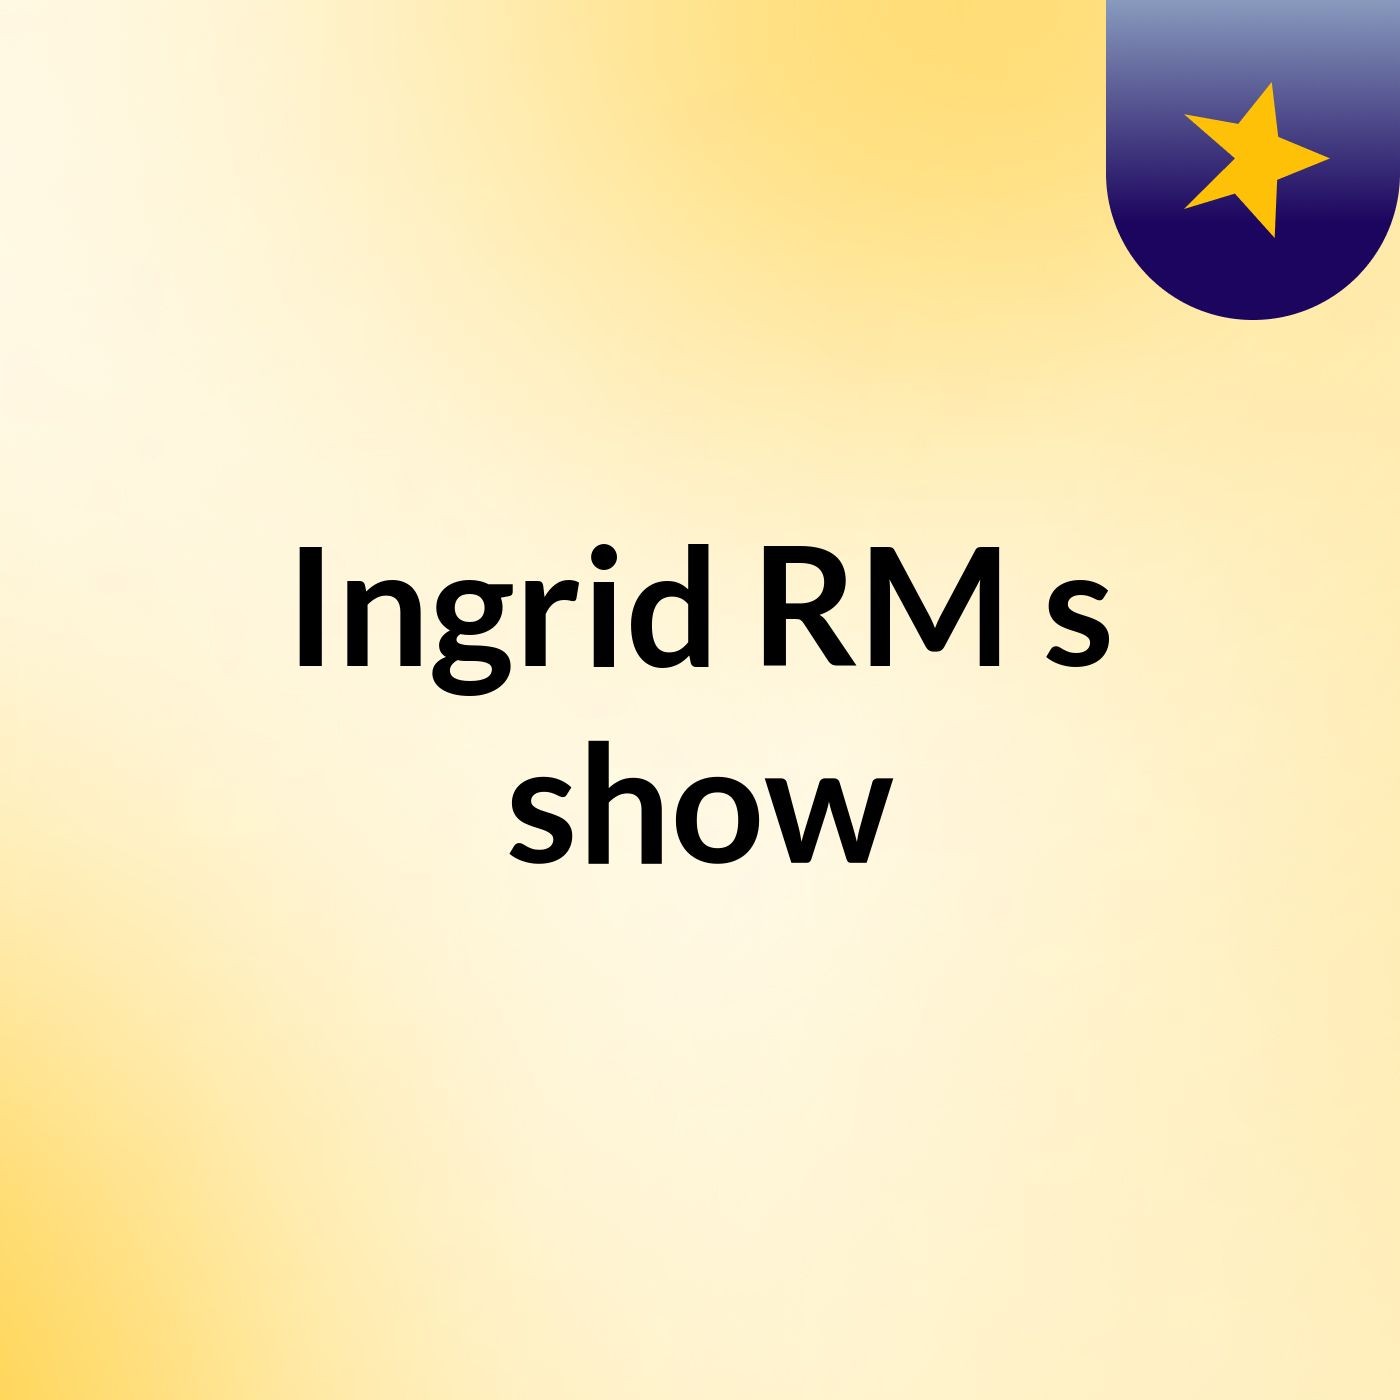 Ingrid RM's show